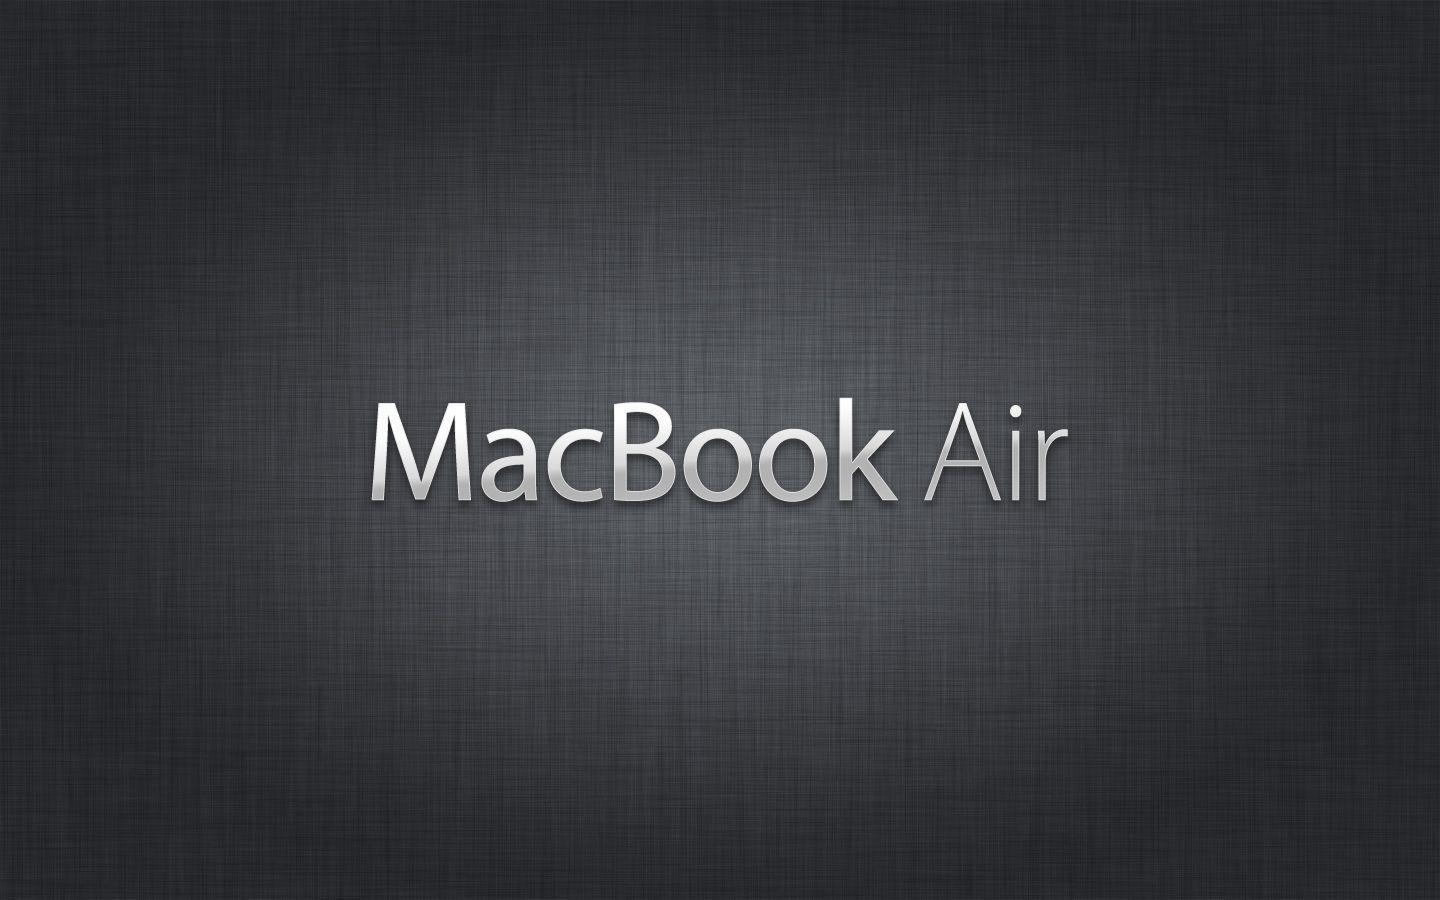 Macbook Air Wallpaper Free Download